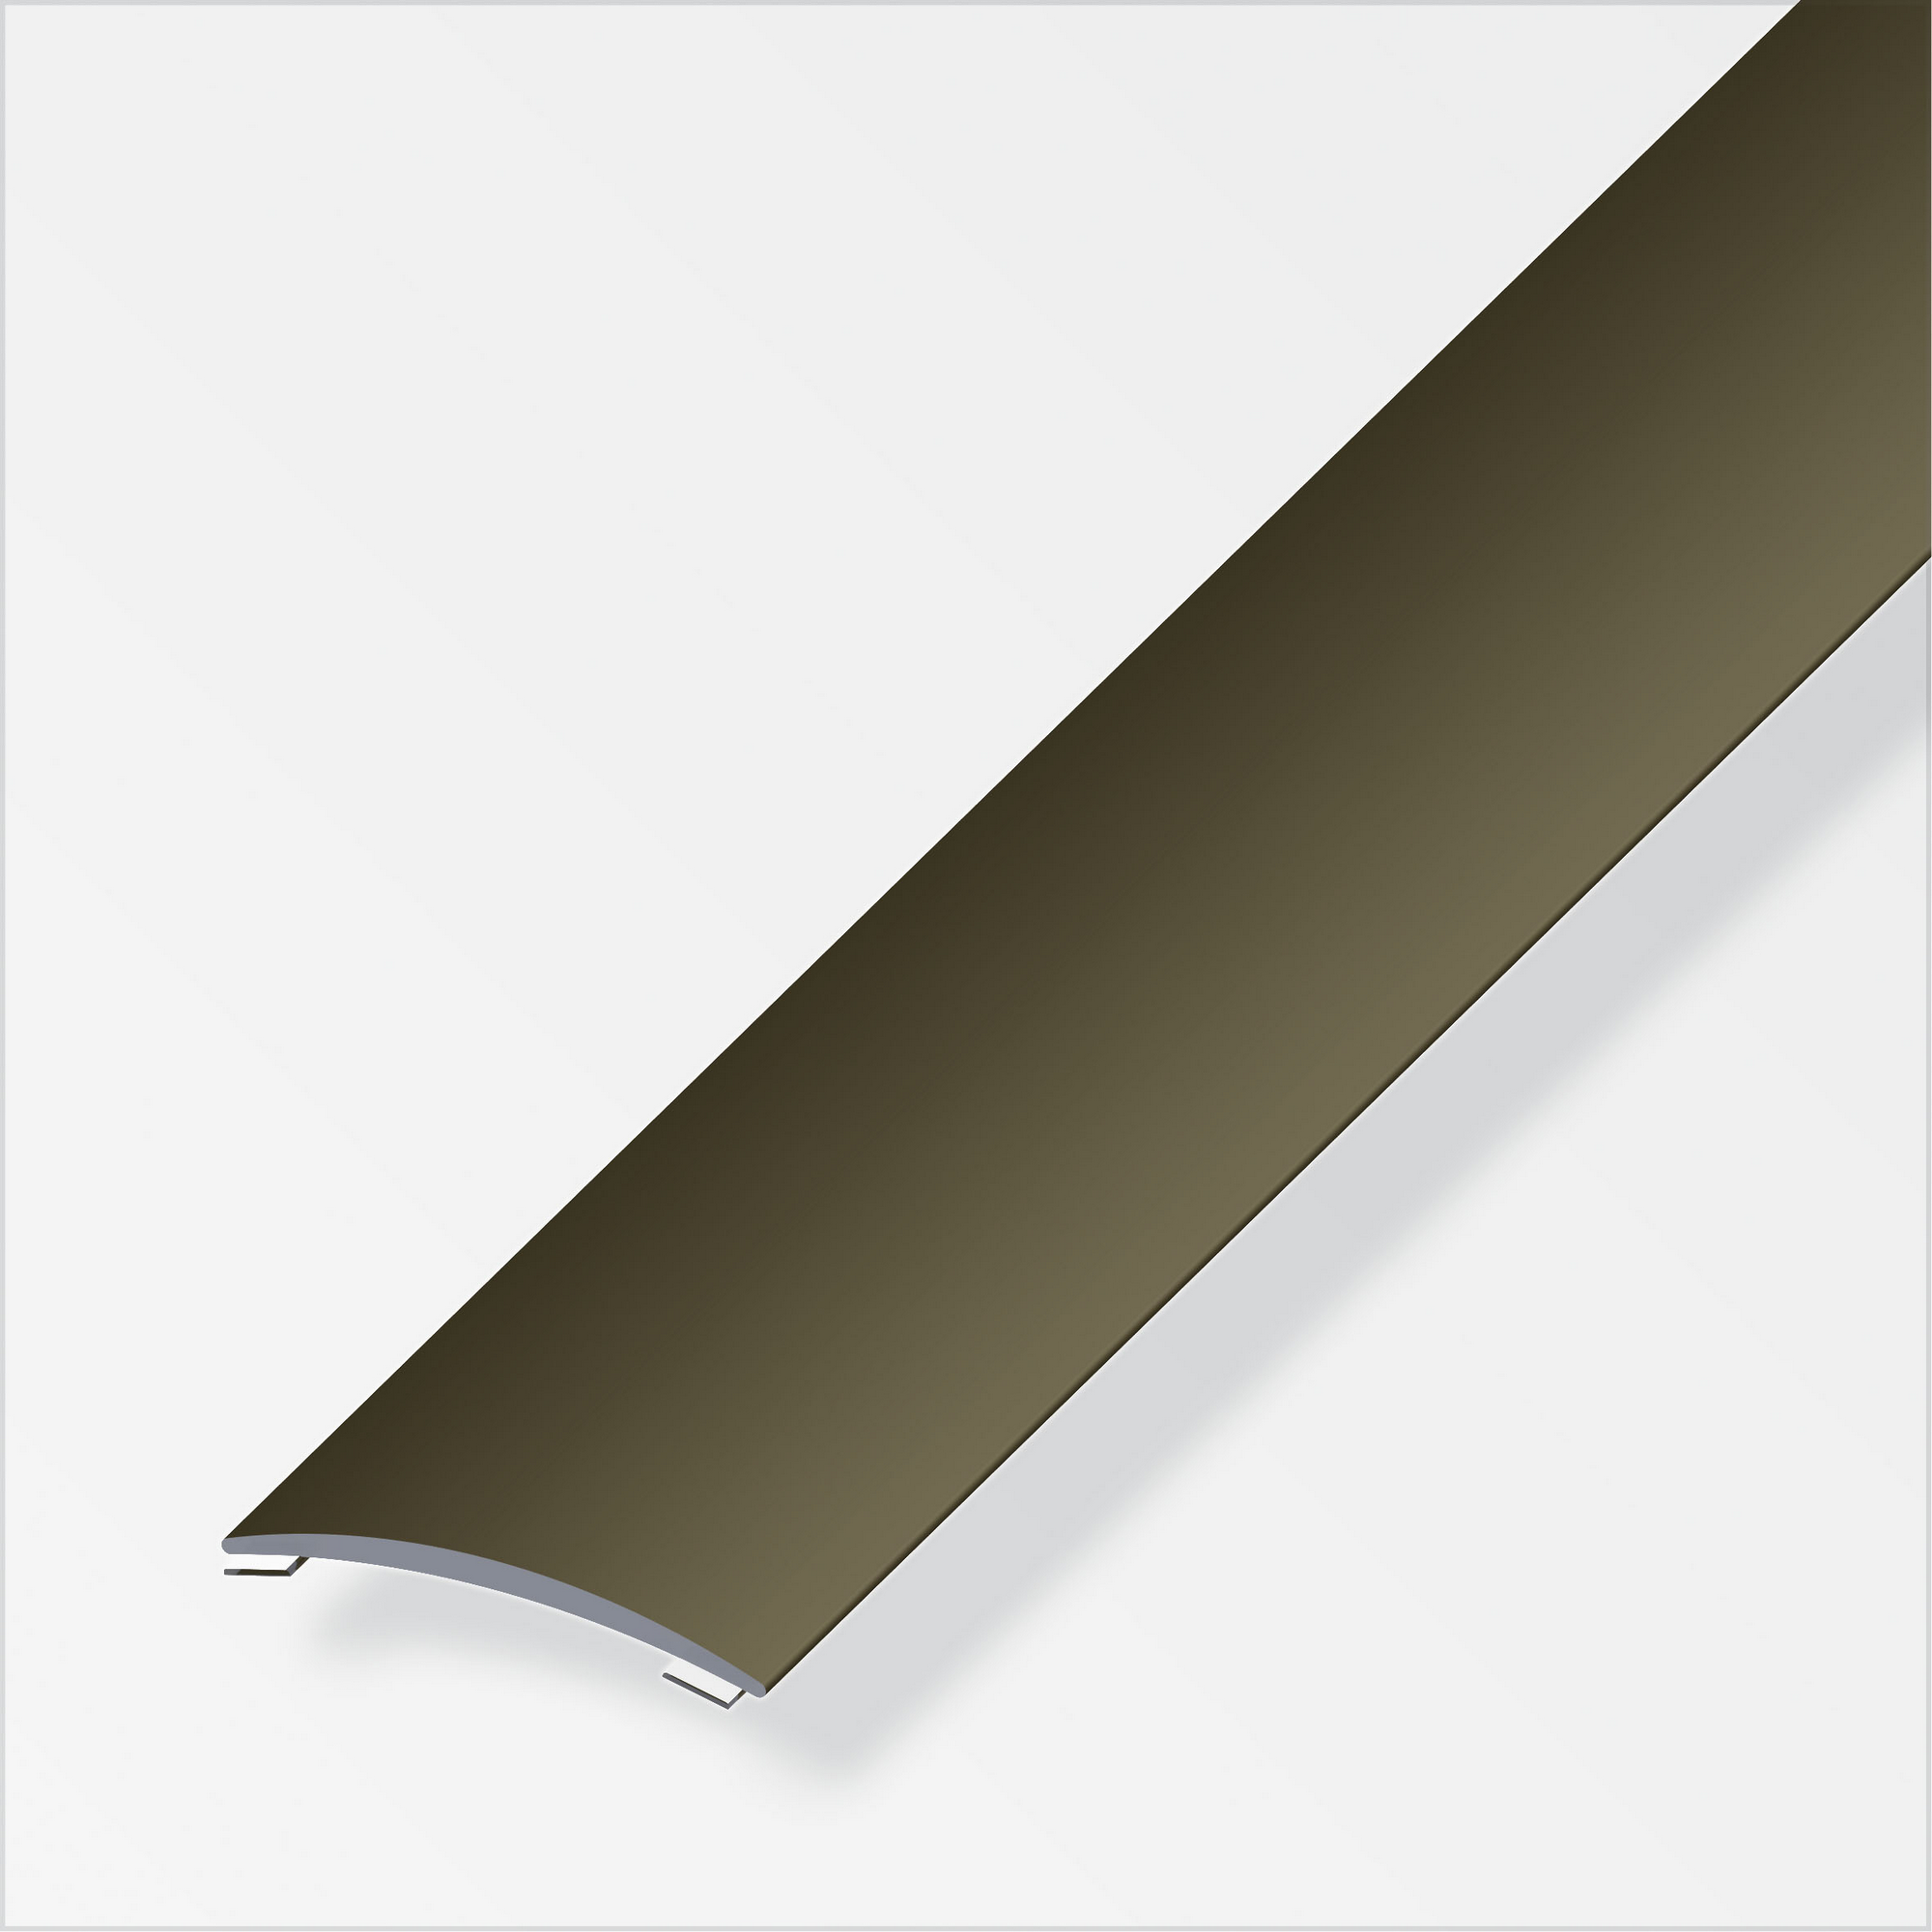 Übergangsprofil Aluminium bronzefarben, Breite 30 mm + product picture